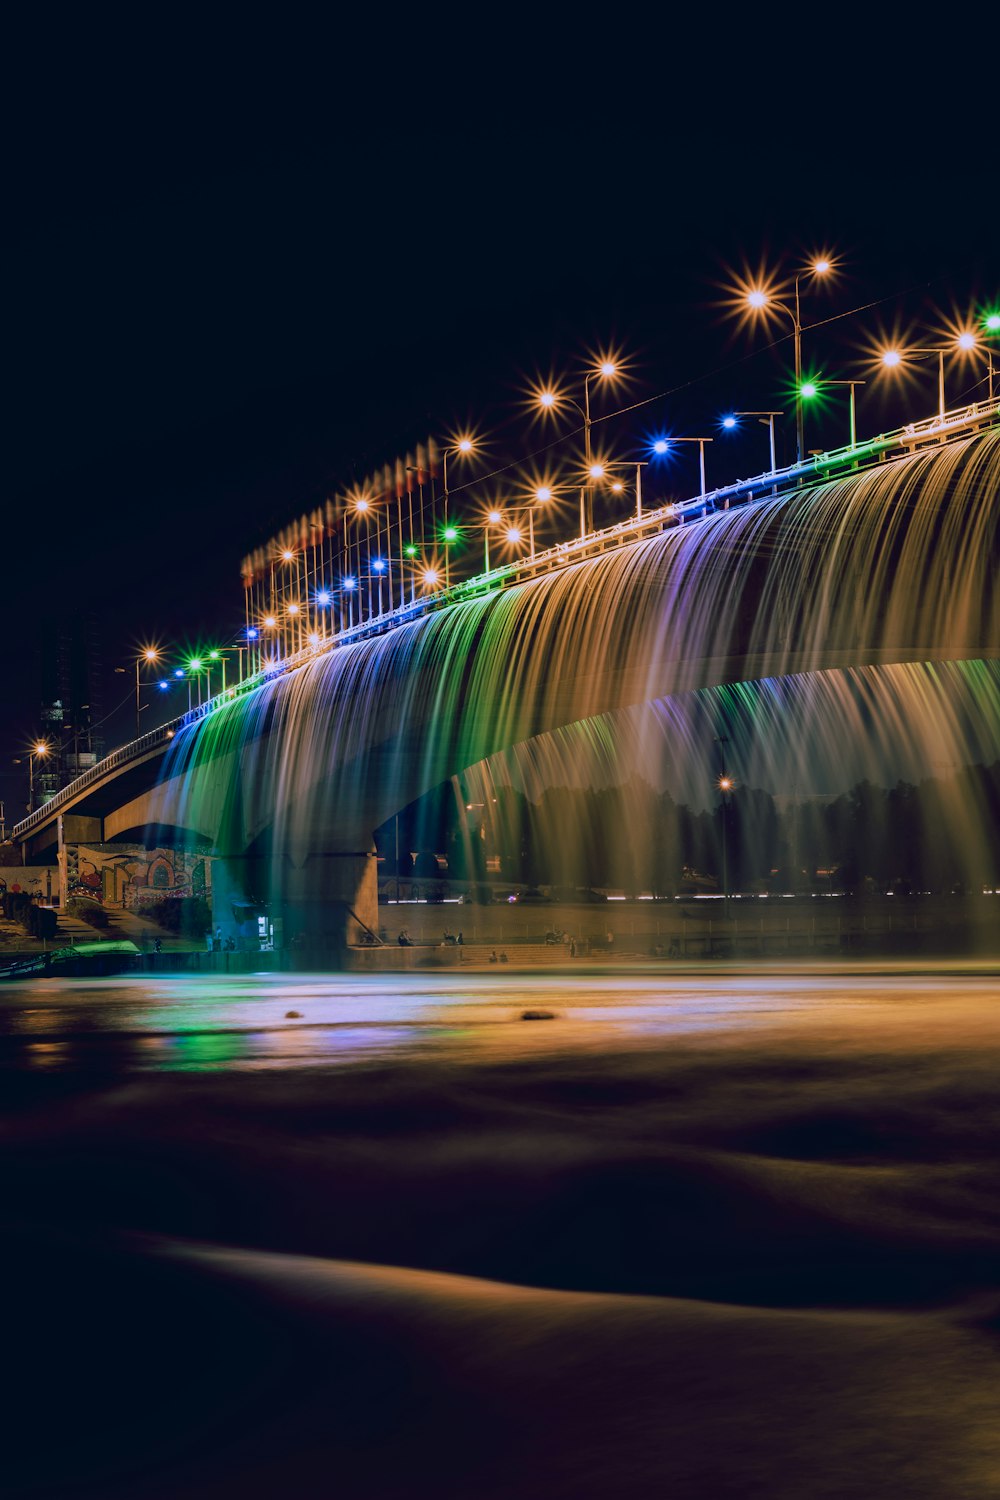 luci LED di colore assortito su ponte di cemento grigio